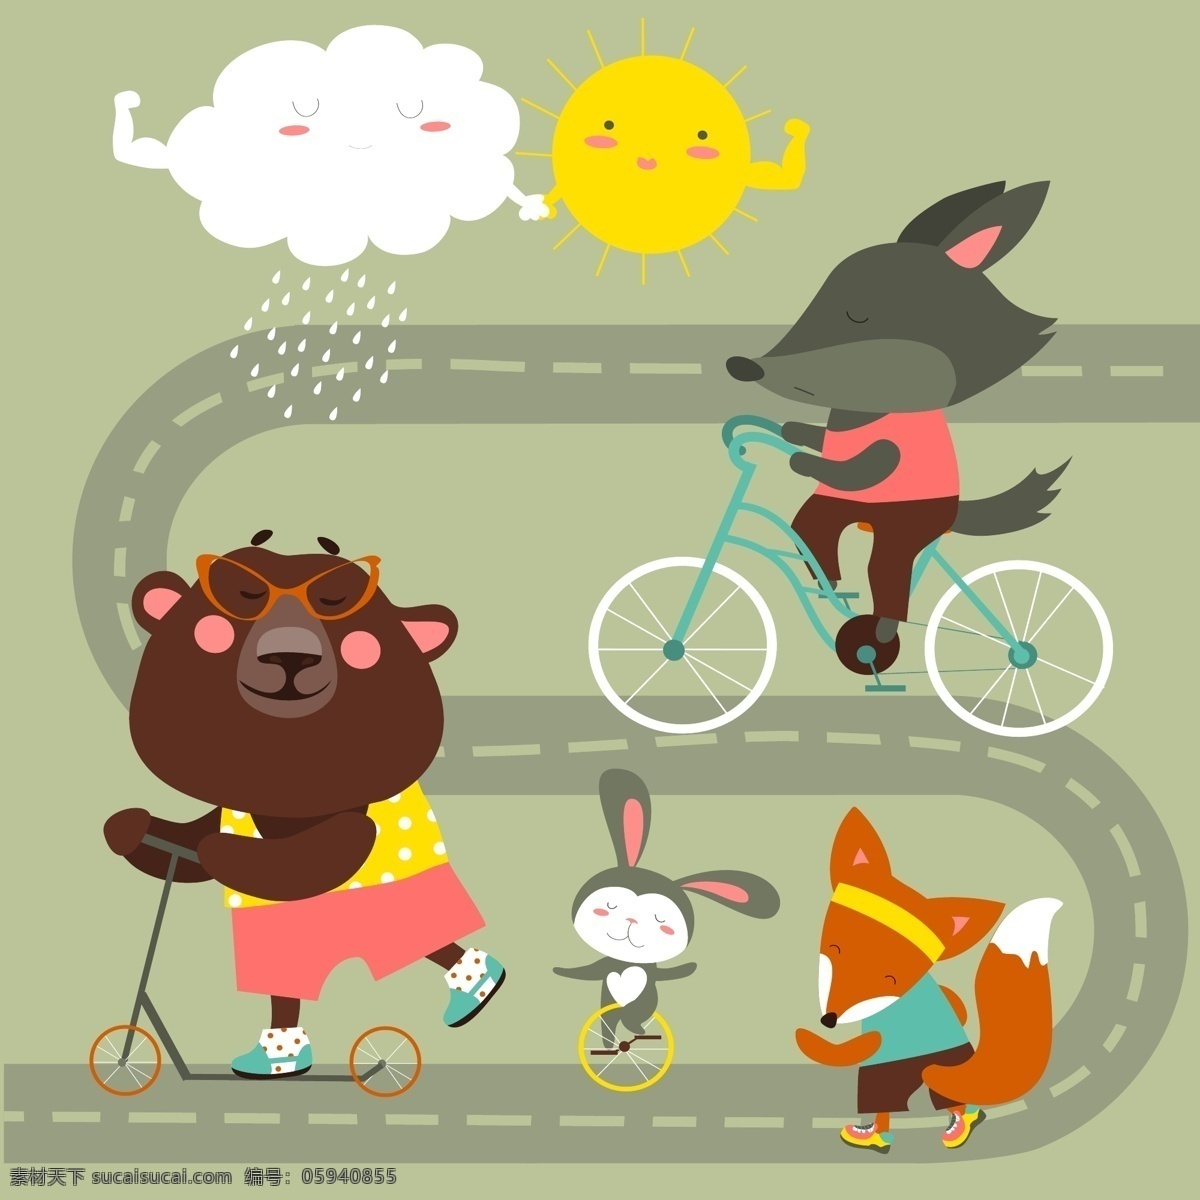 马路 上 骑 行 动物 卡通动物 骑行 骑自行车 汽车 矢量动物 太阳